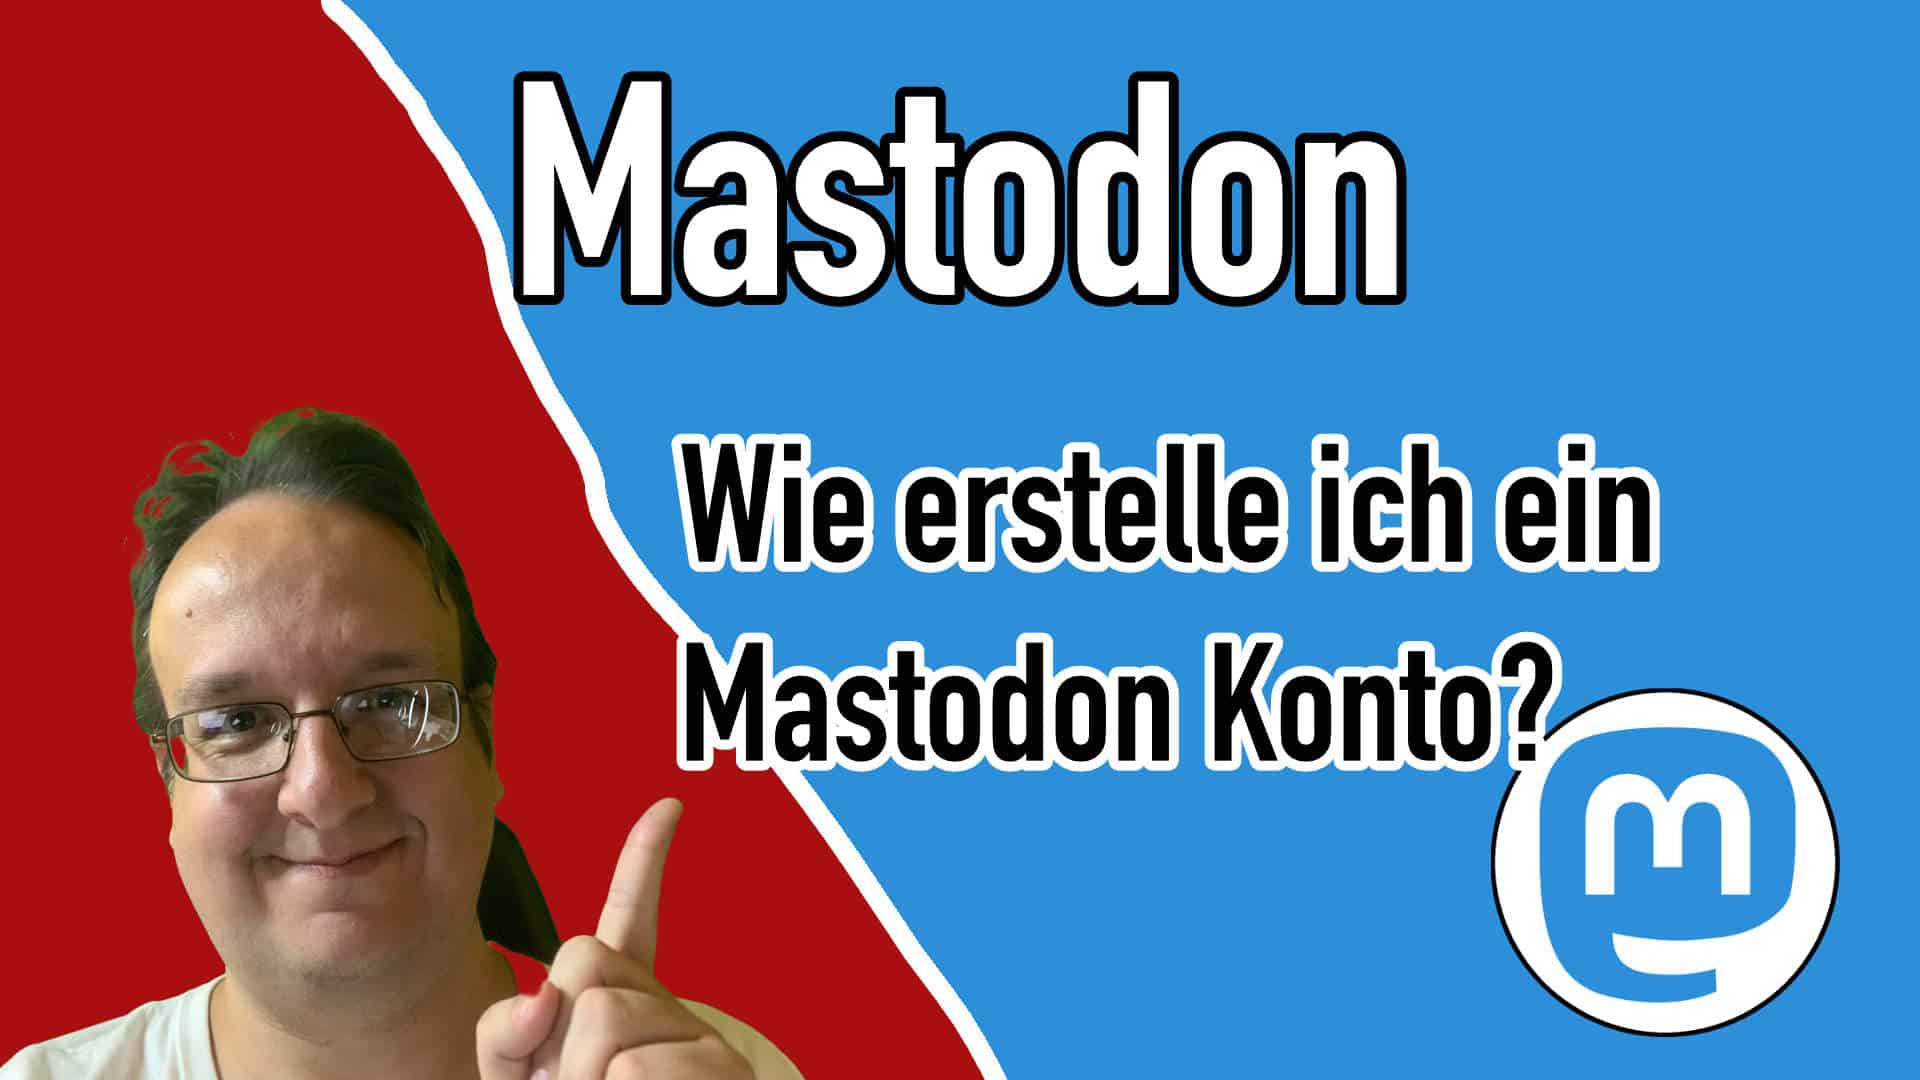 Mastodon wie erstelle ich mir ein Konto / Account?